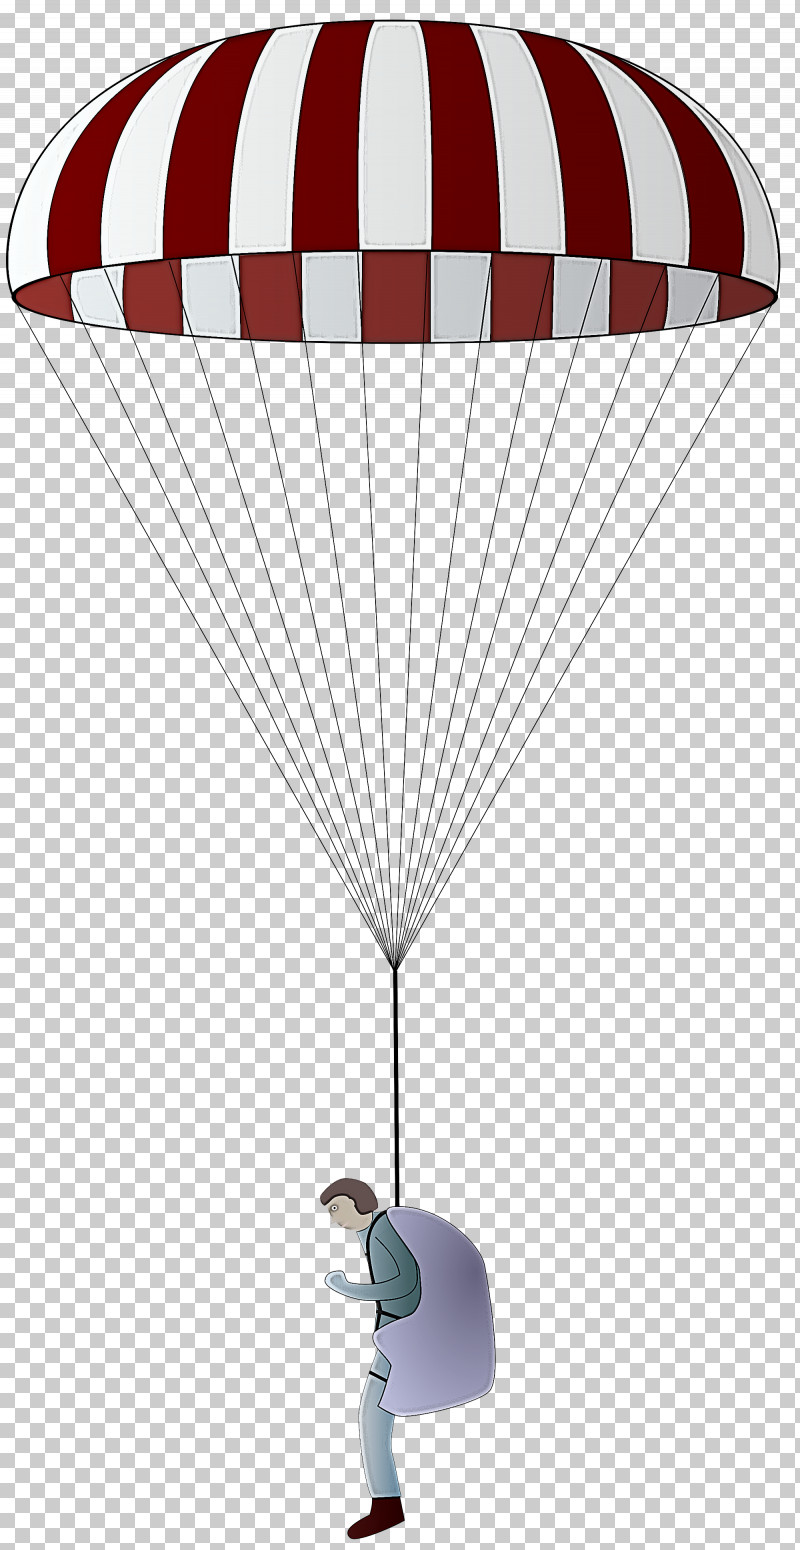 Hot Air Balloon PNG, Clipart, Air Sports, Balloon, Hot Air Balloon, Parachute, Parachuting Free PNG Download